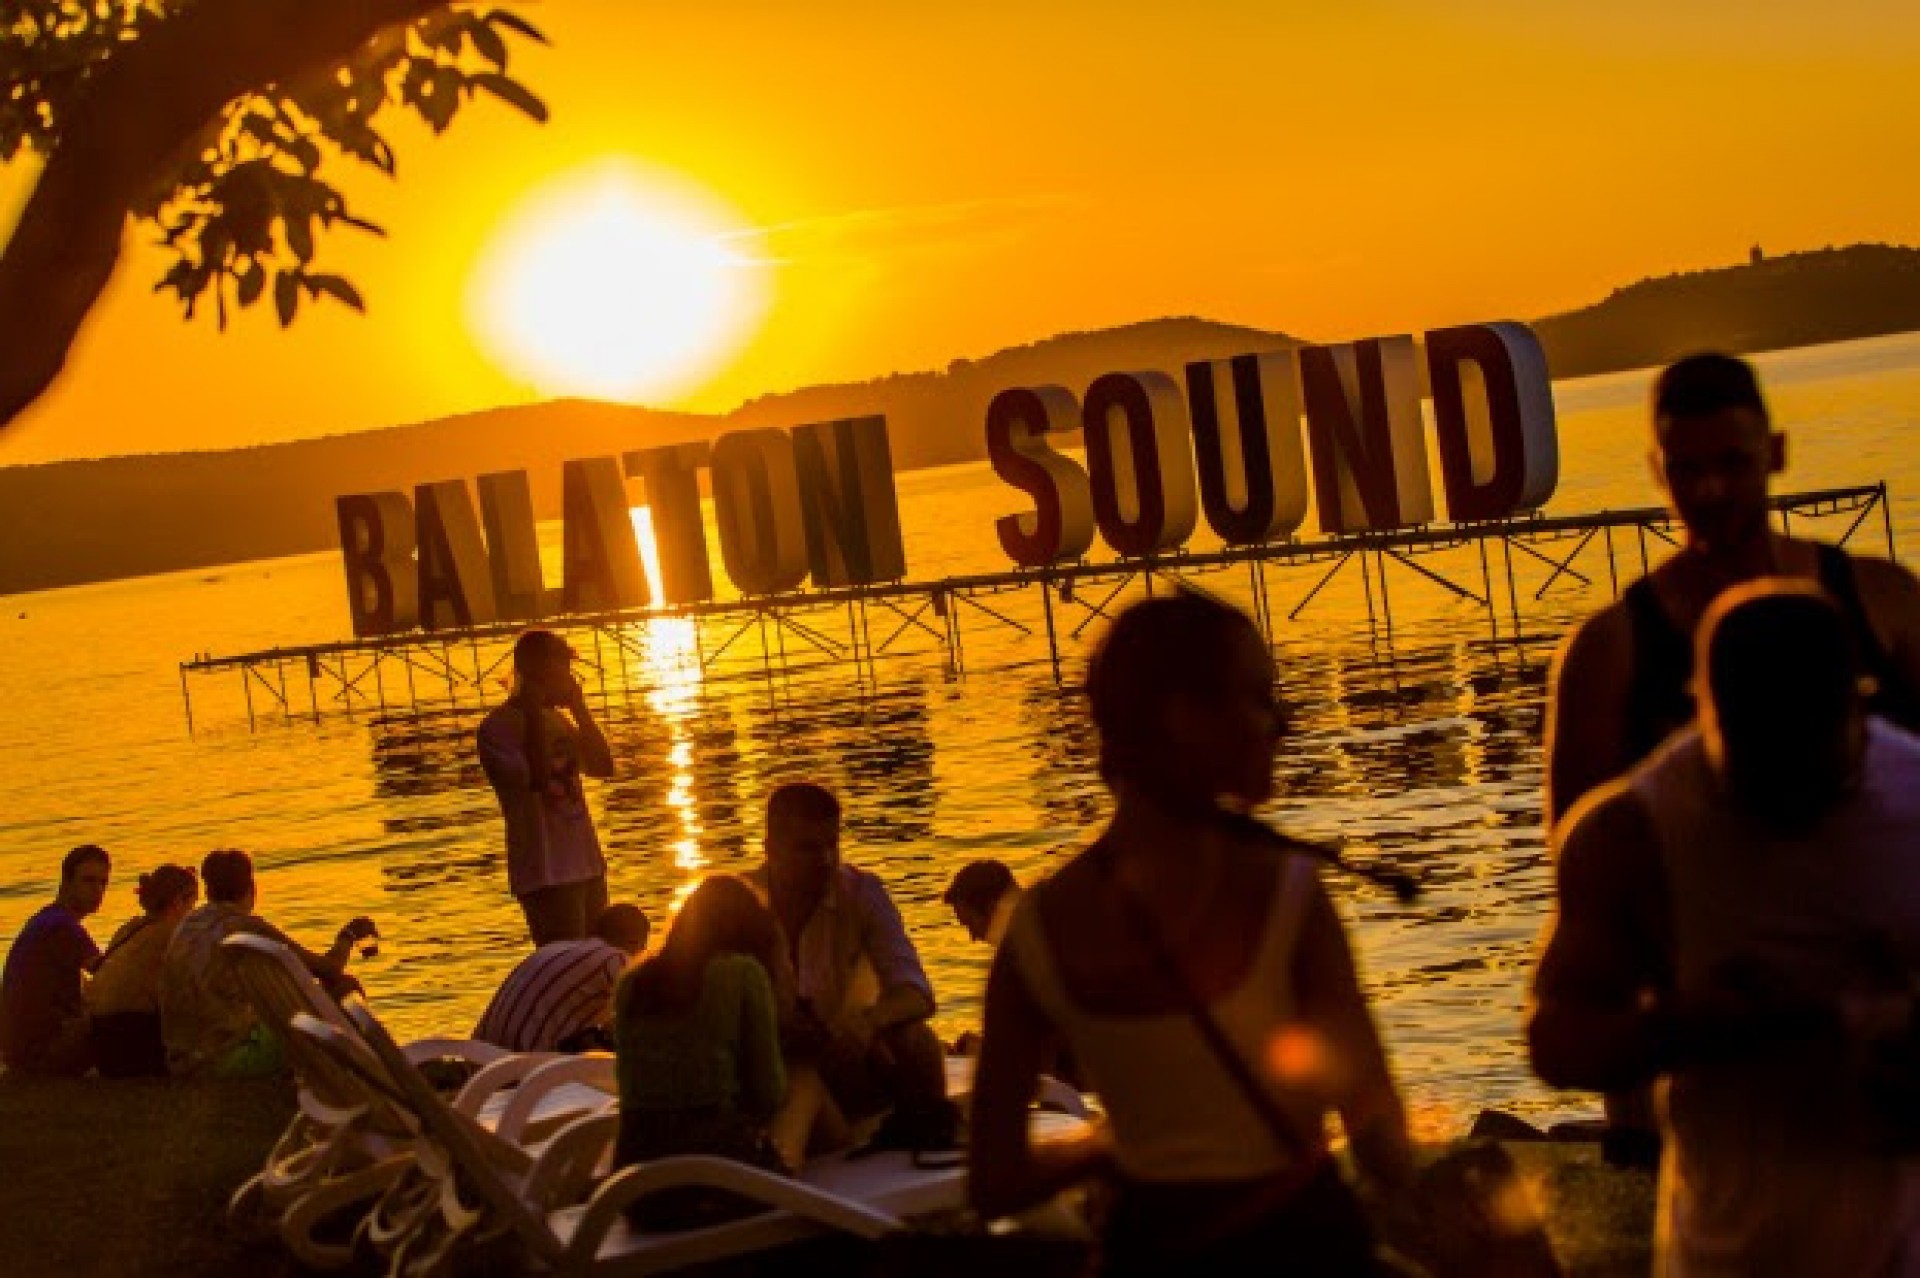 A nyár legváltozatosabb partisorozatát ígéri a Balaton Sound